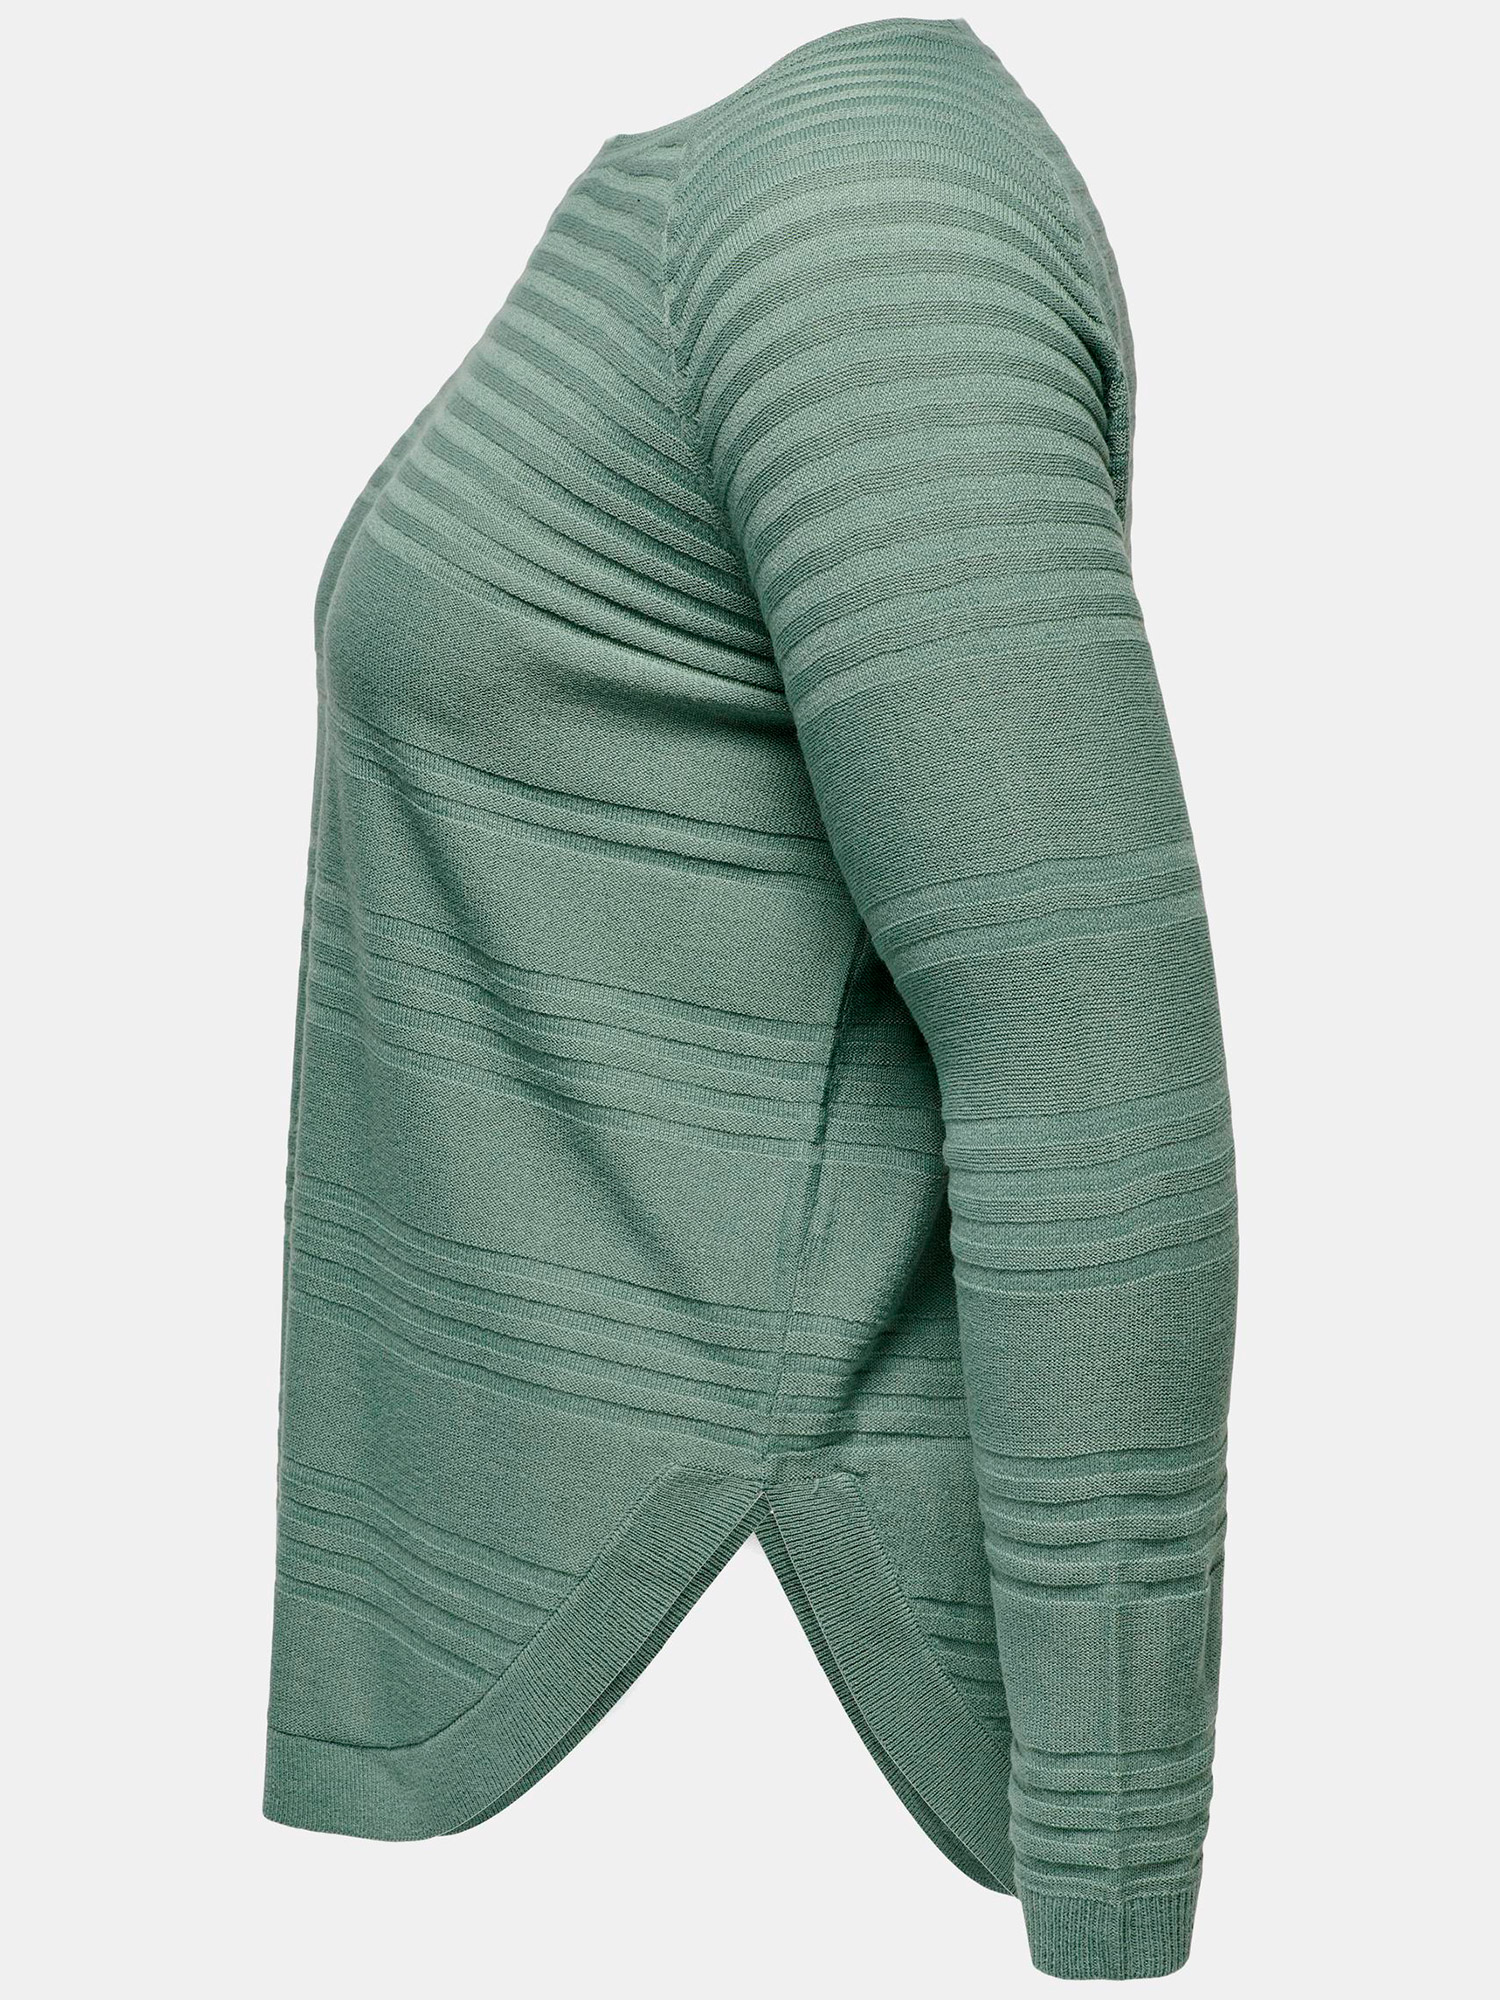 NEWAIRPLAIN - Grøn strik bluse med striber fra Only Carmakoma